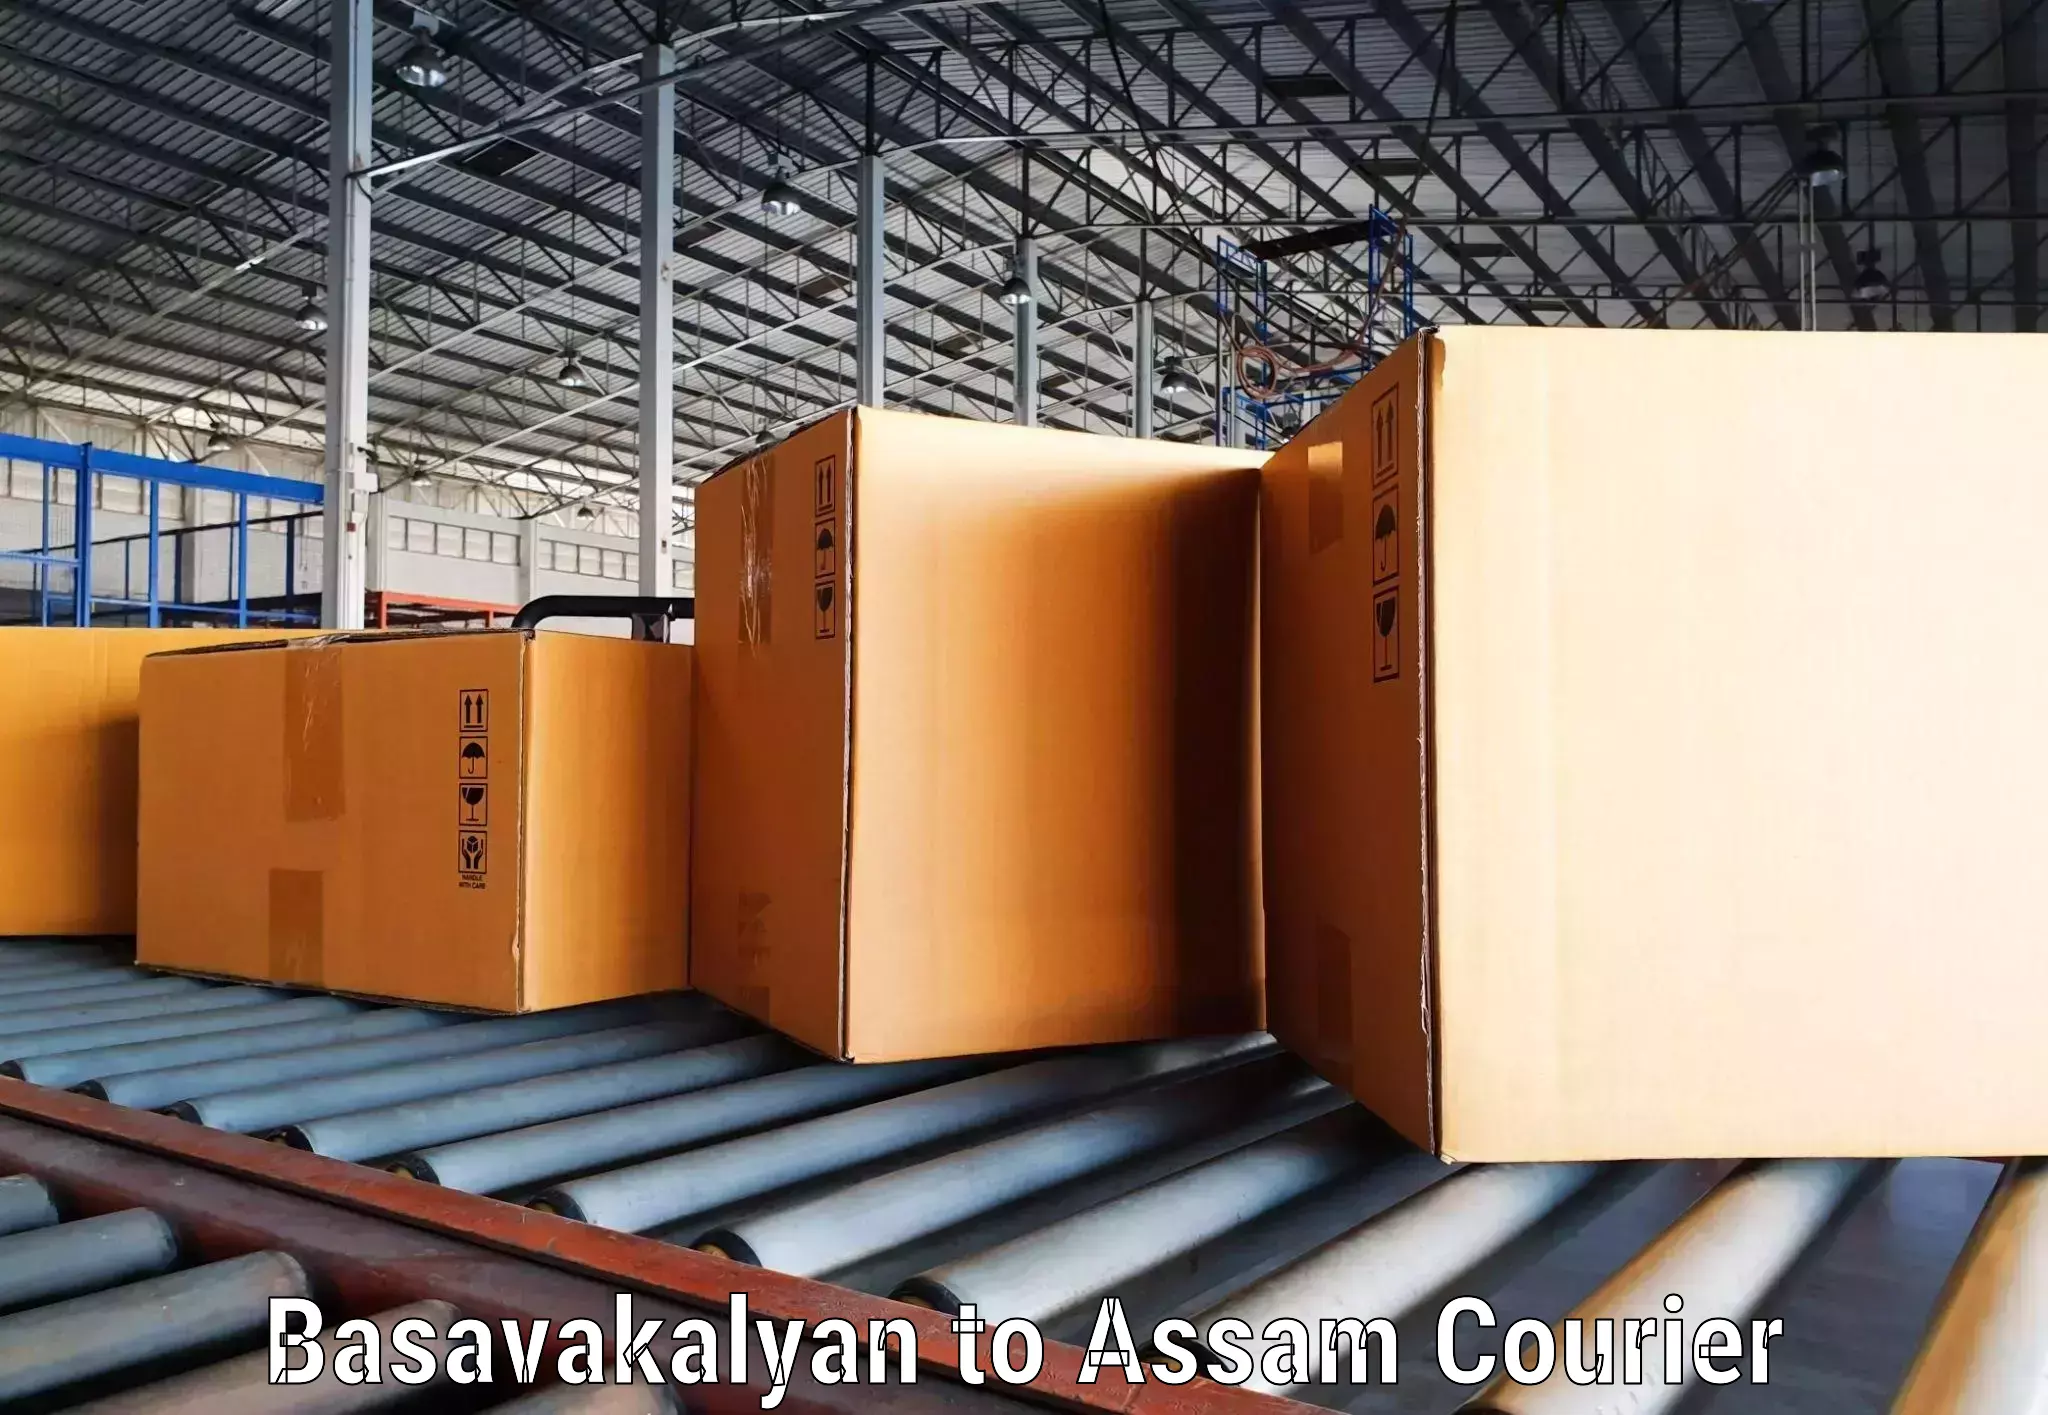 Efficient shipping operations in Basavakalyan to Dhekiajuli